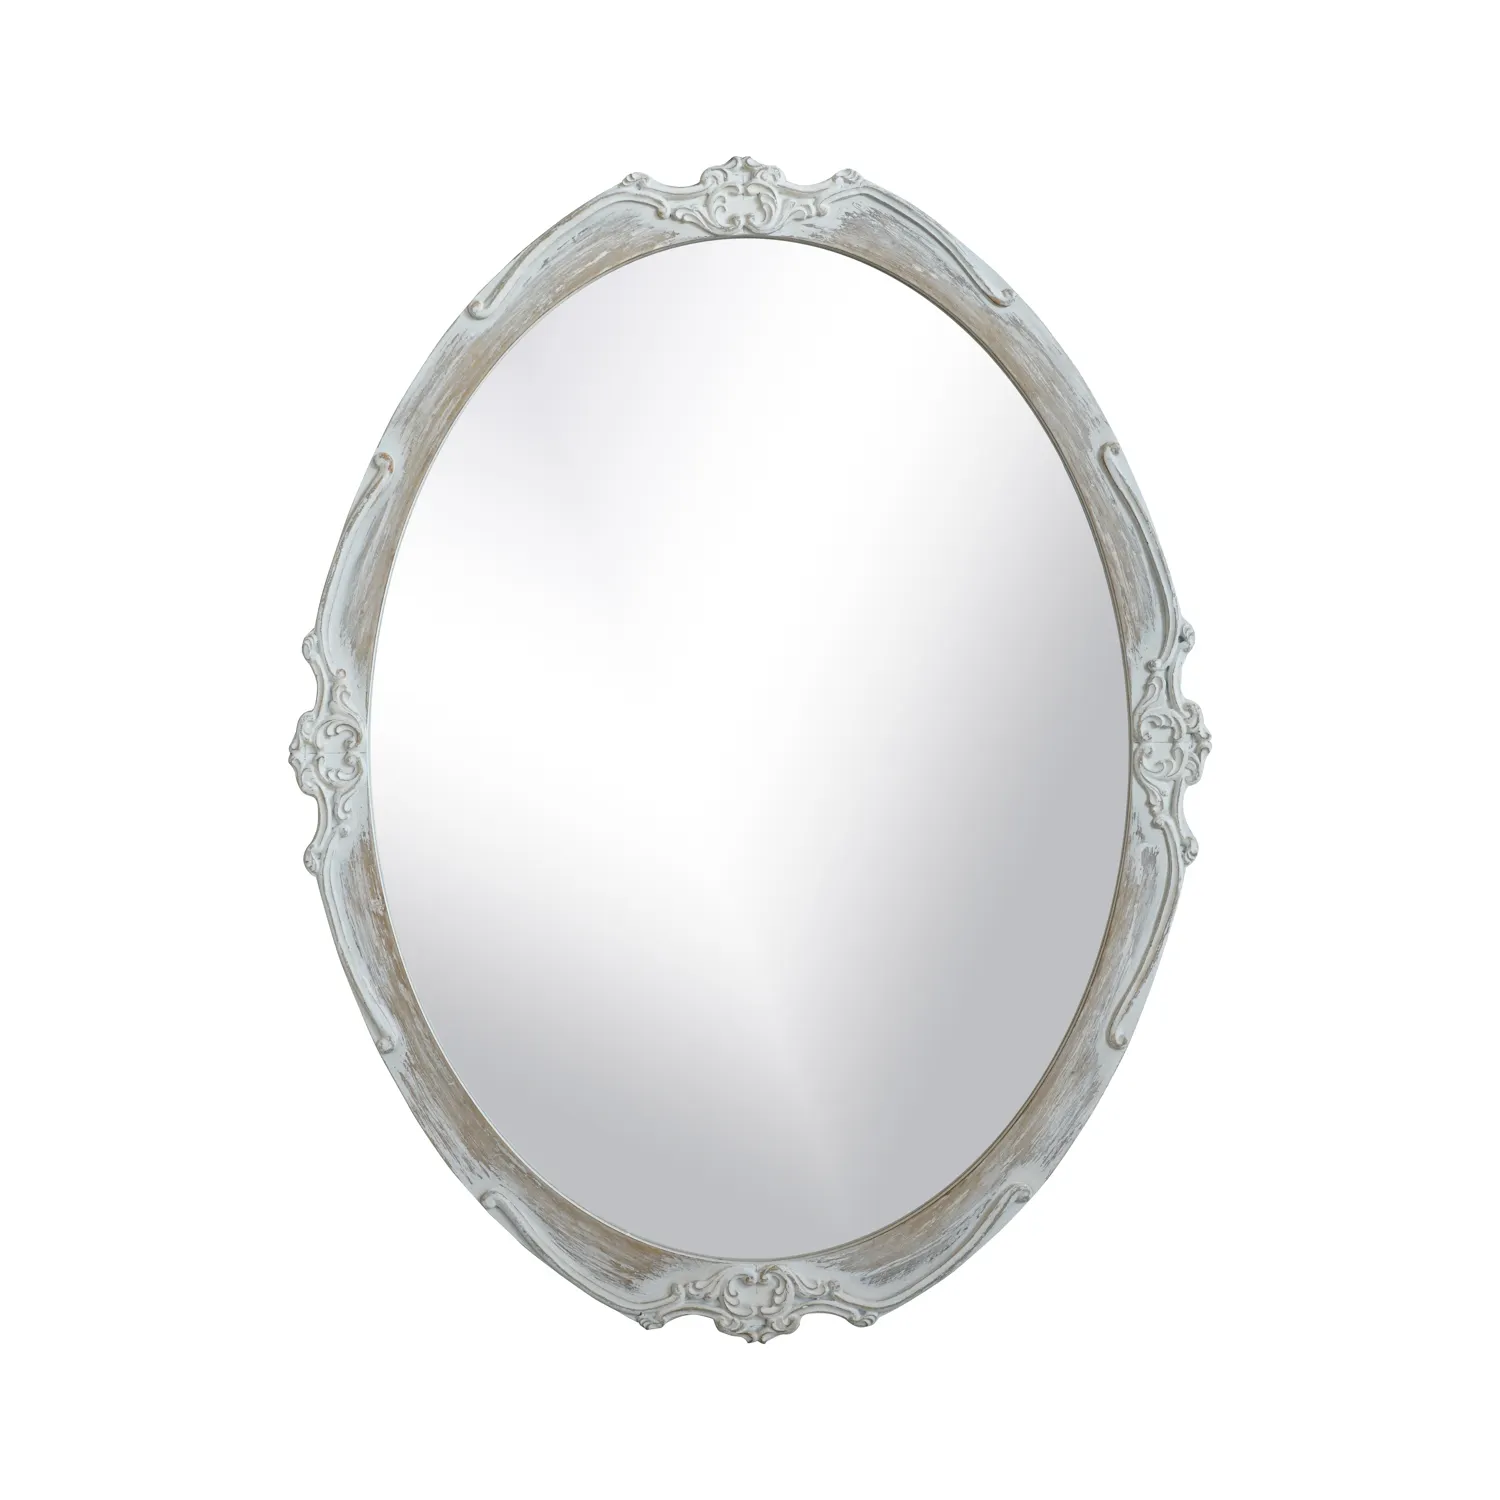 Настенные зеркальные украшения YUNFEI mirrorsell для дома